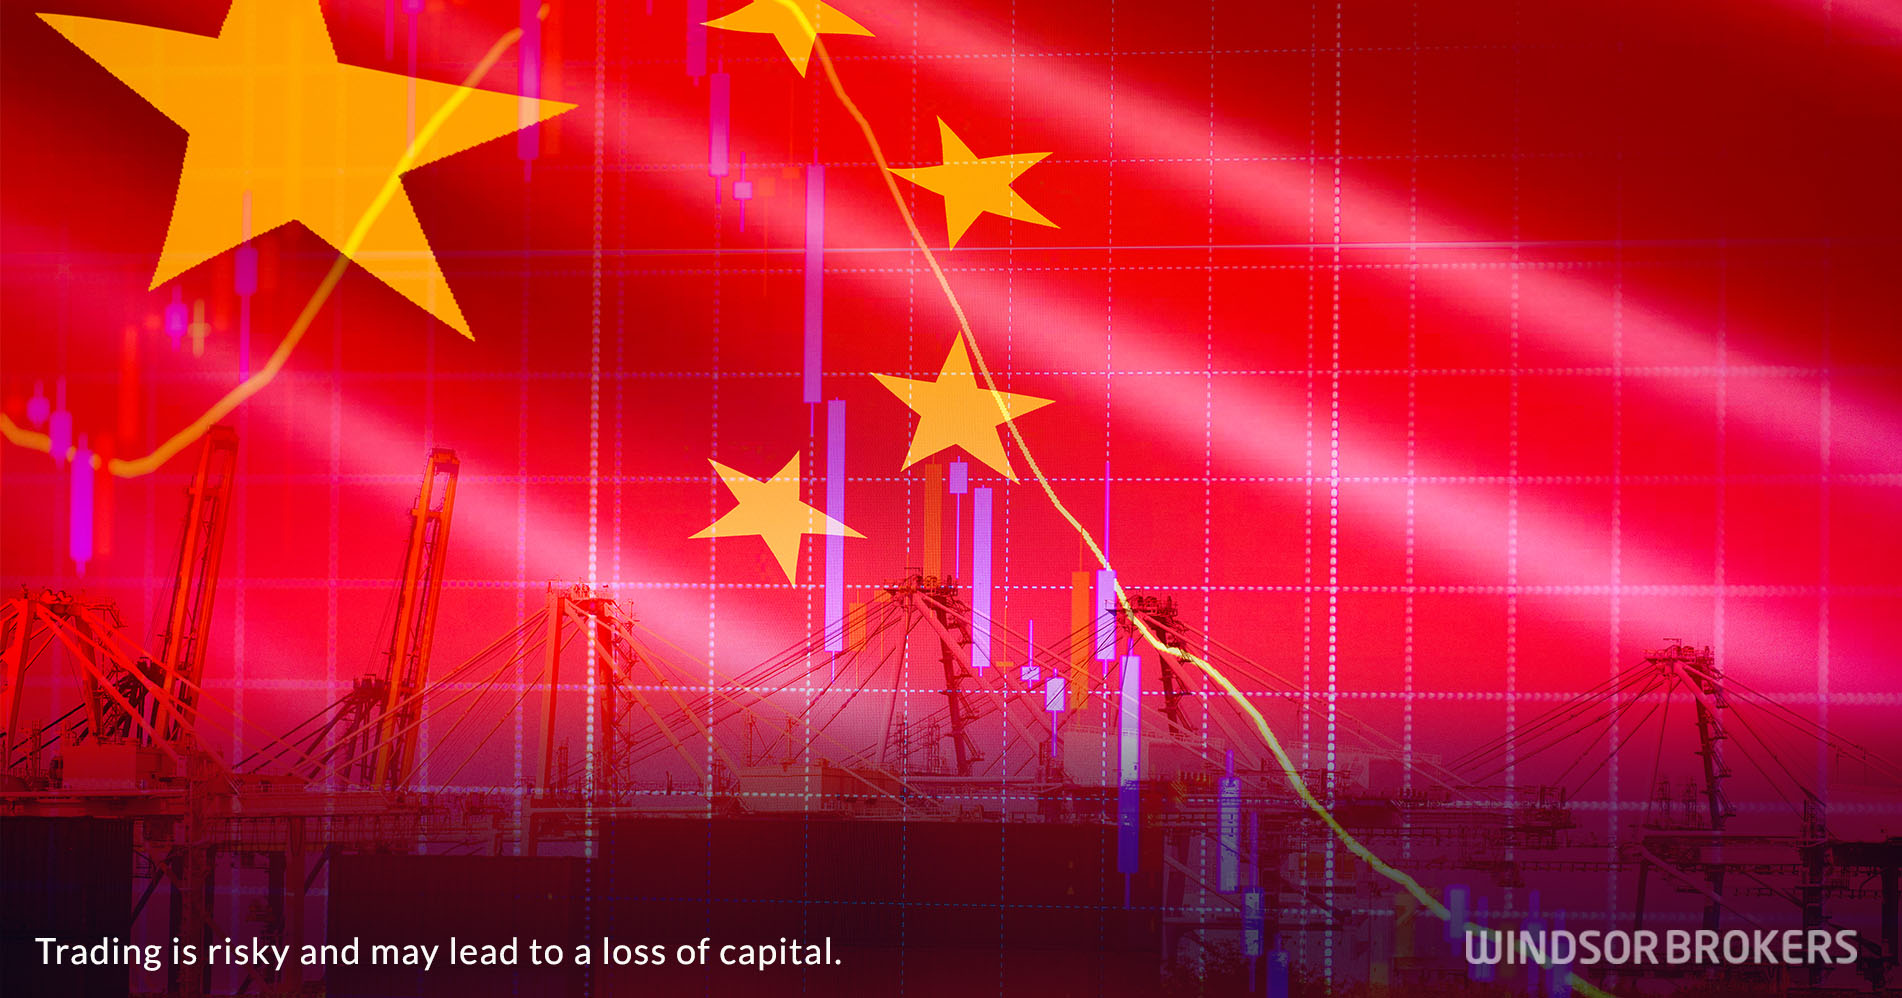 Dữ liệu kinh tế yếu kém của Trung Quốc làm tăng thêm lo ngại về sự phục hồi chậm lại và khiến ngân hàng trung ương phải cắt giảm lãi suất chính sách một lần nữa - Windsor Brokers